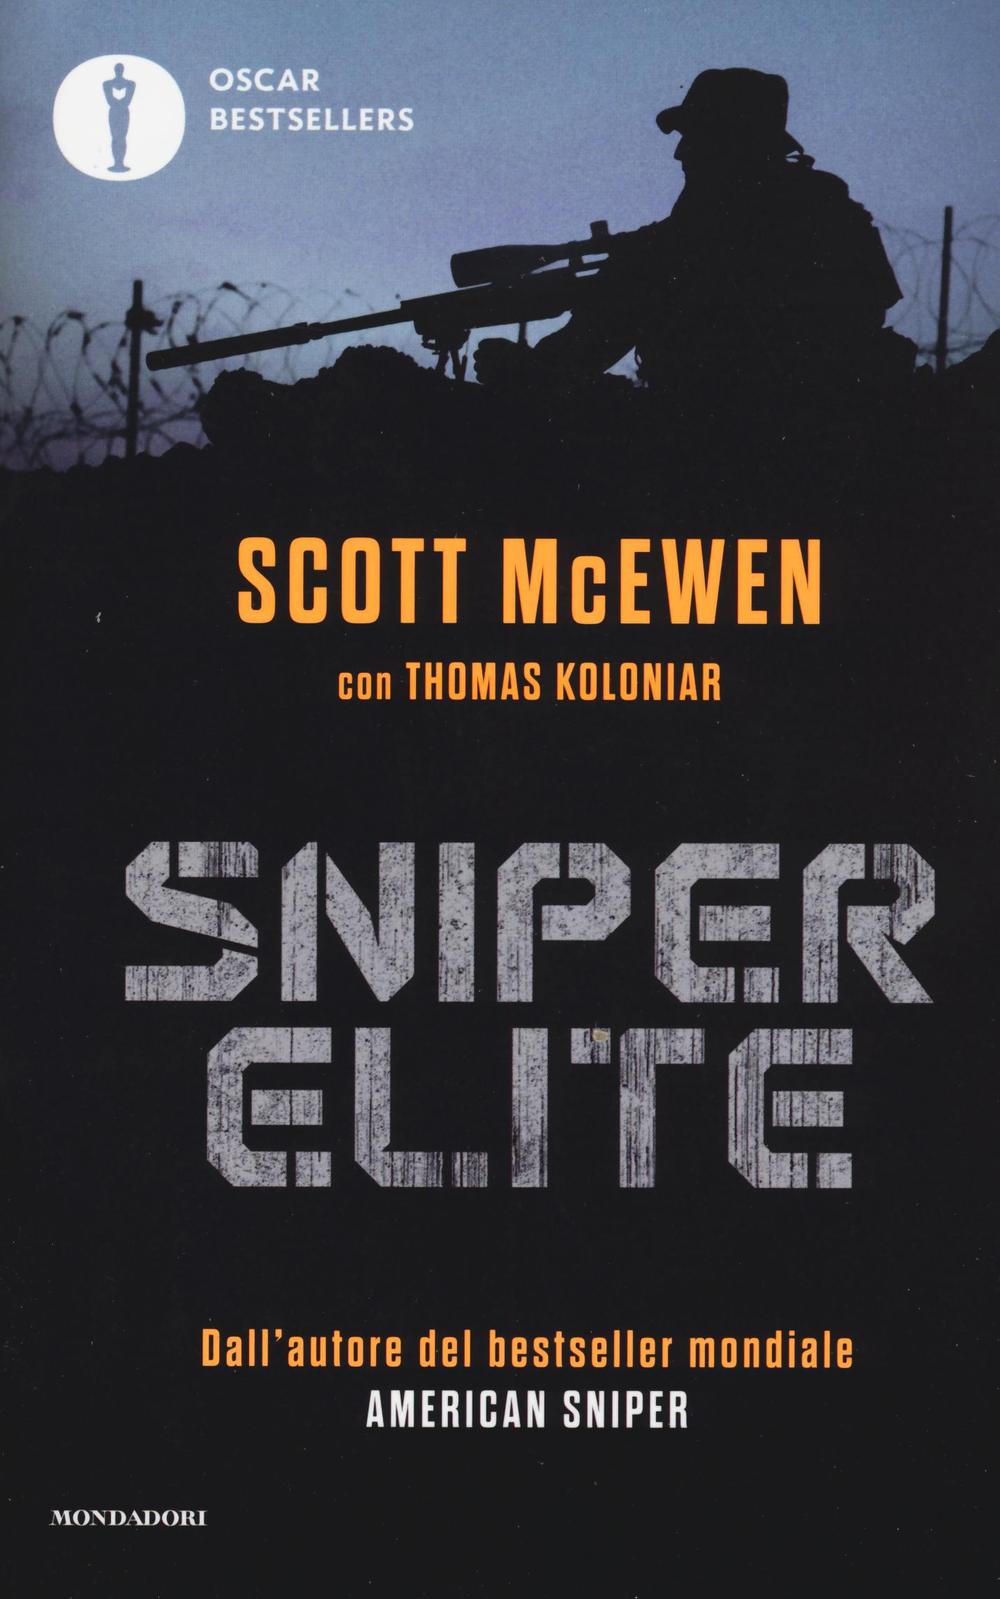 Sniper elite.